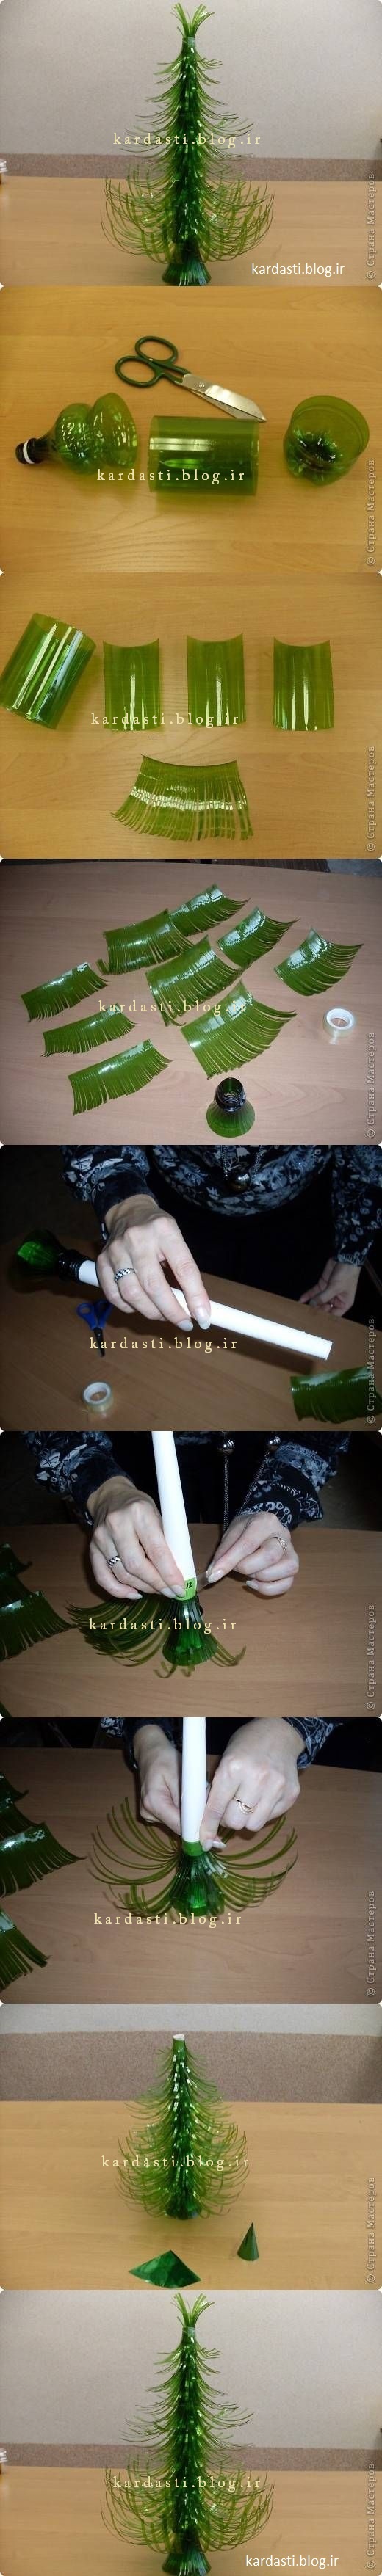 آموزش درست کردن درخت کاج با بطری پلاستیکی